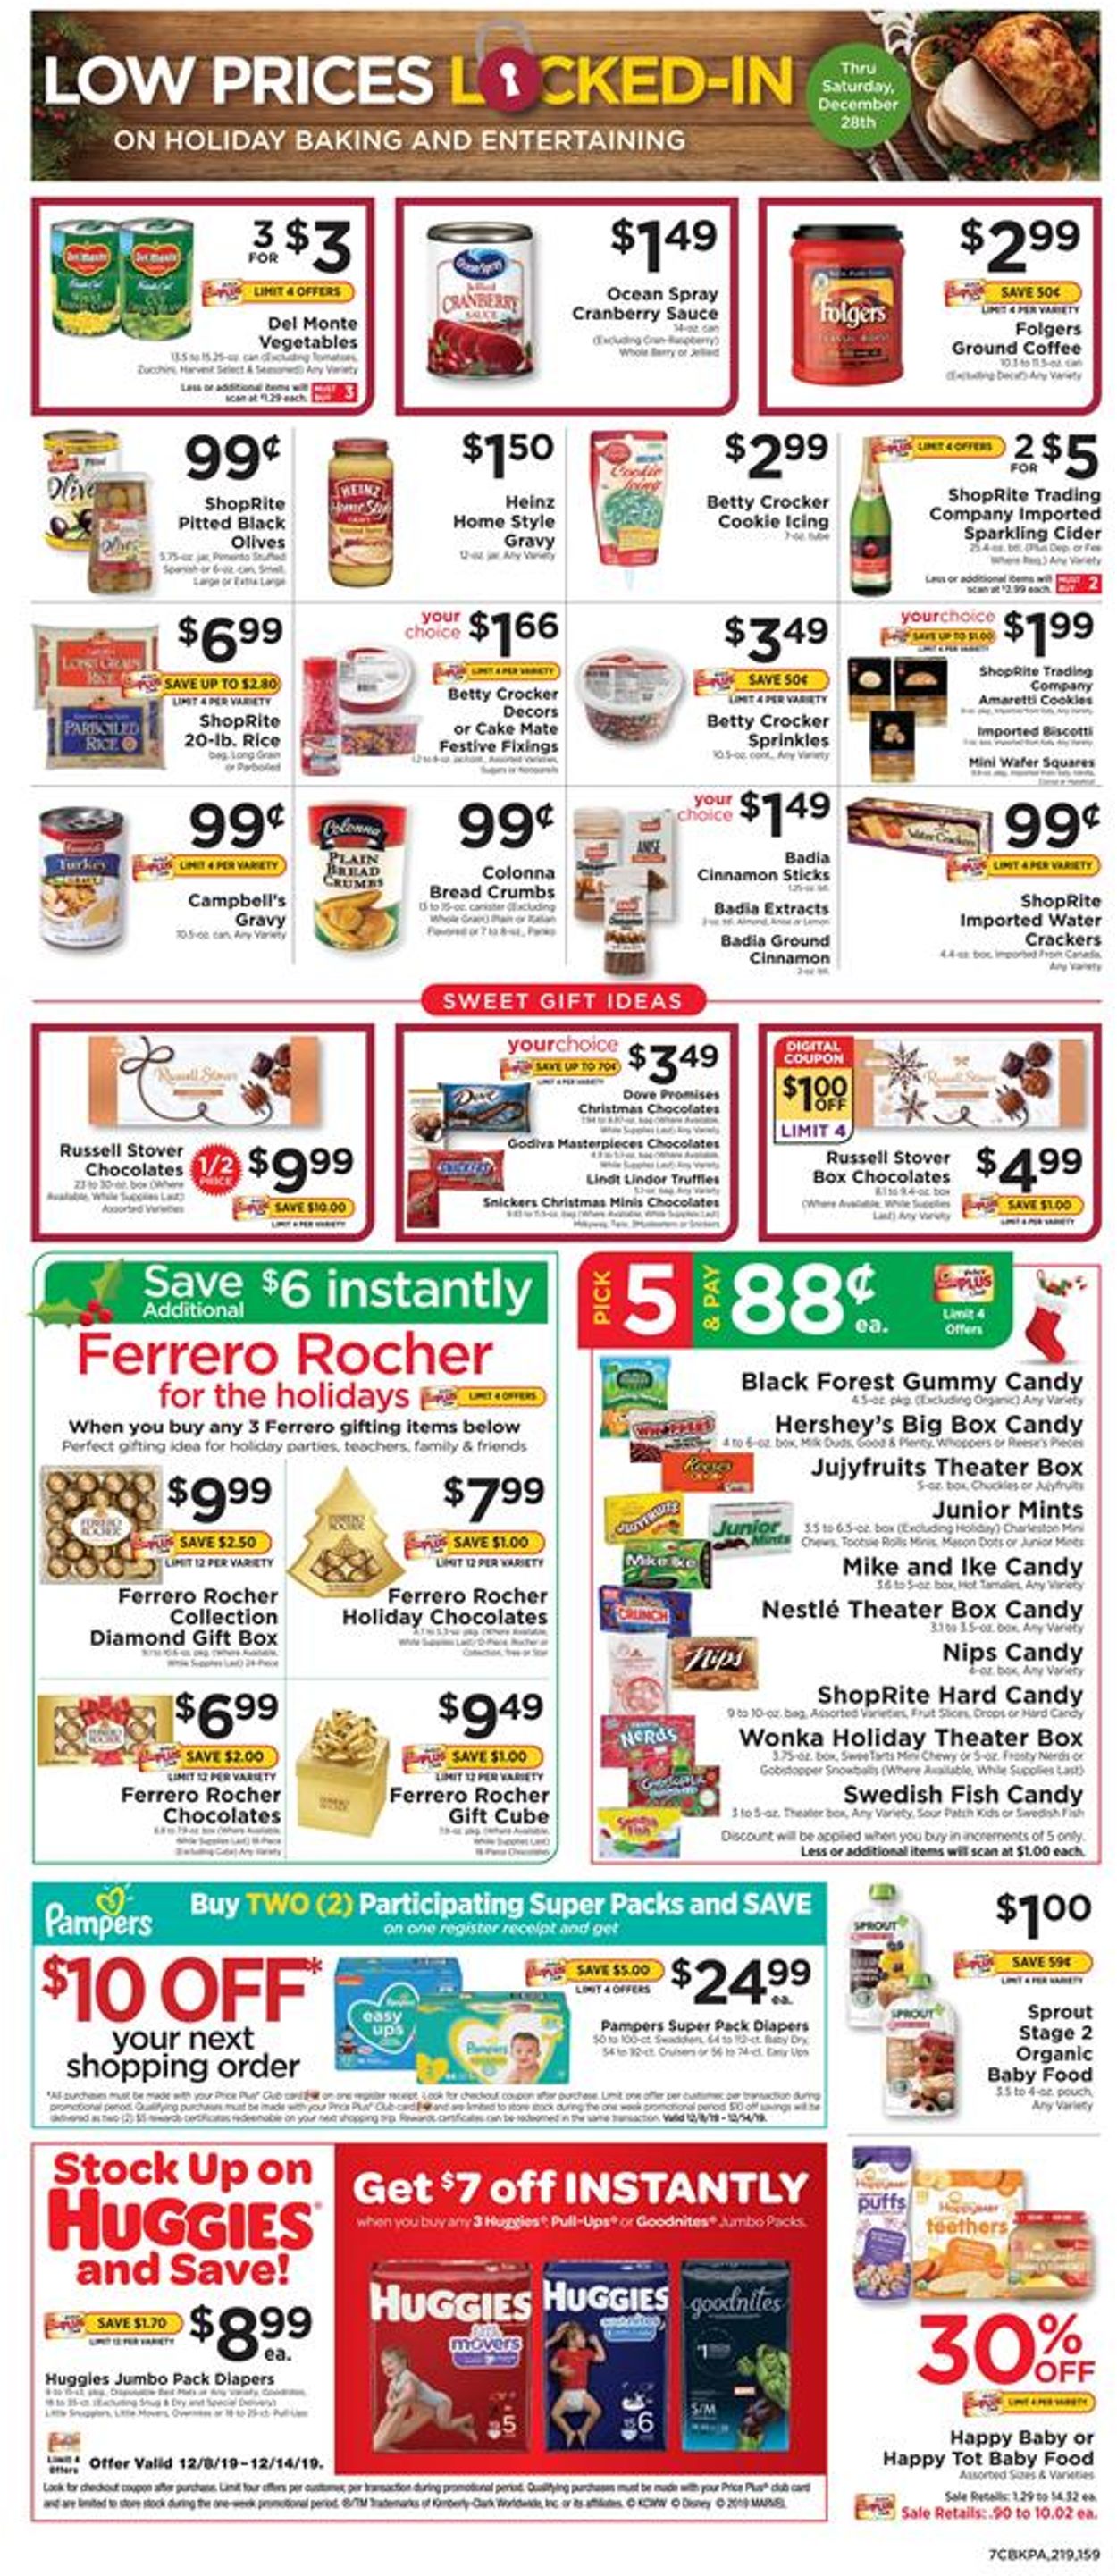 ShopRite - Holiday Ad 2019 Weekly Ad Circular - valid 12/08-12/14/2019 (Page 7)